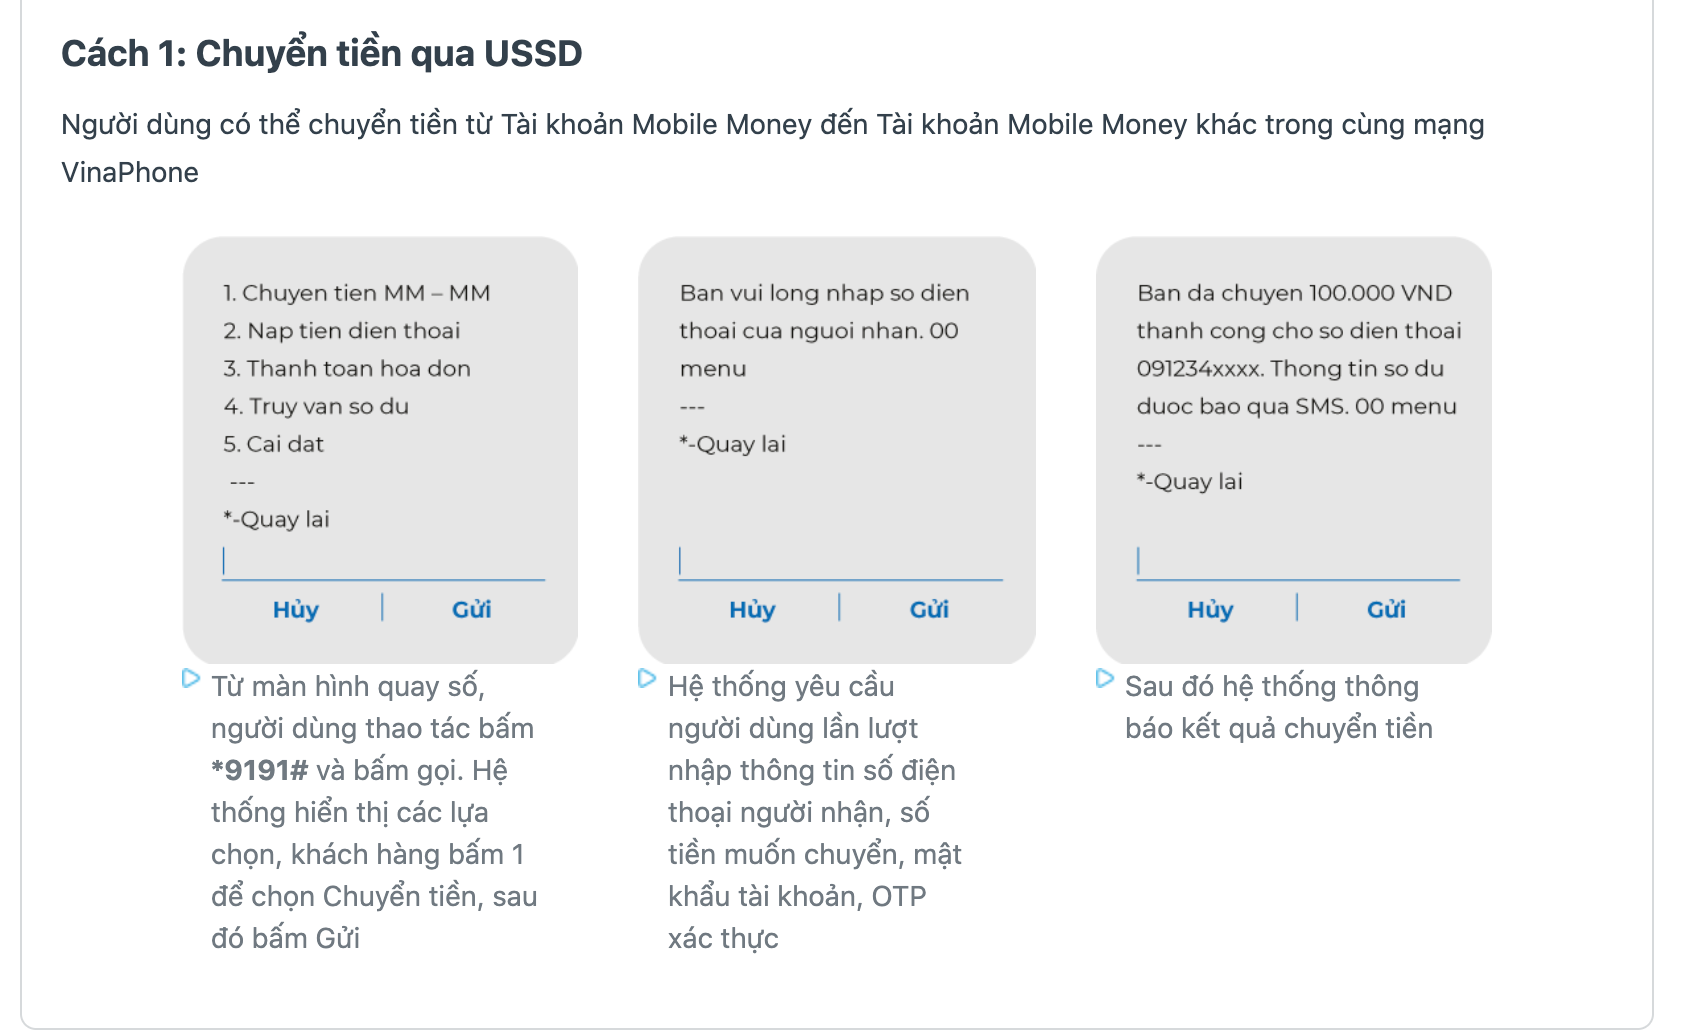 Mobile Money là công cụ giúp đơn giản hóa việc giao dịch tiền tệ mà không cần sử dụng thẻ hoặc tiền mặt. Hãy tìm hiểu về ứng dụng này thông qua hình ảnh và quyết định sử dụng Mobile Money để nhanh chóng thanh toán chi phí của mình ngay hôm nay.